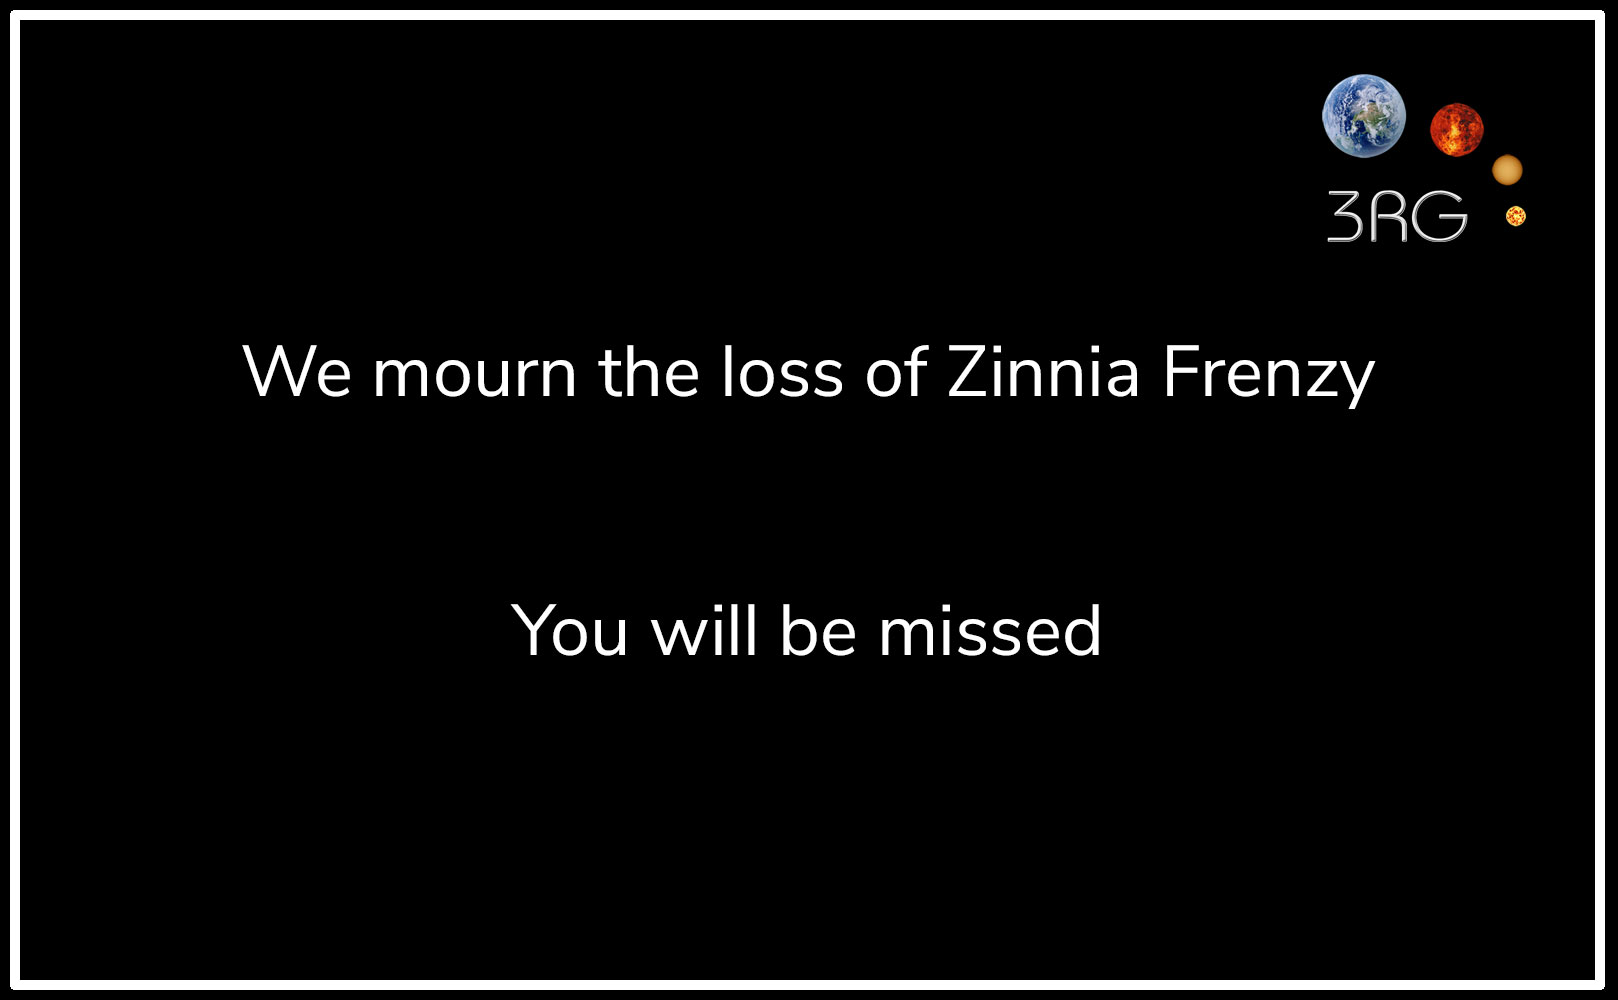 Mourning Zinnia Frenzy